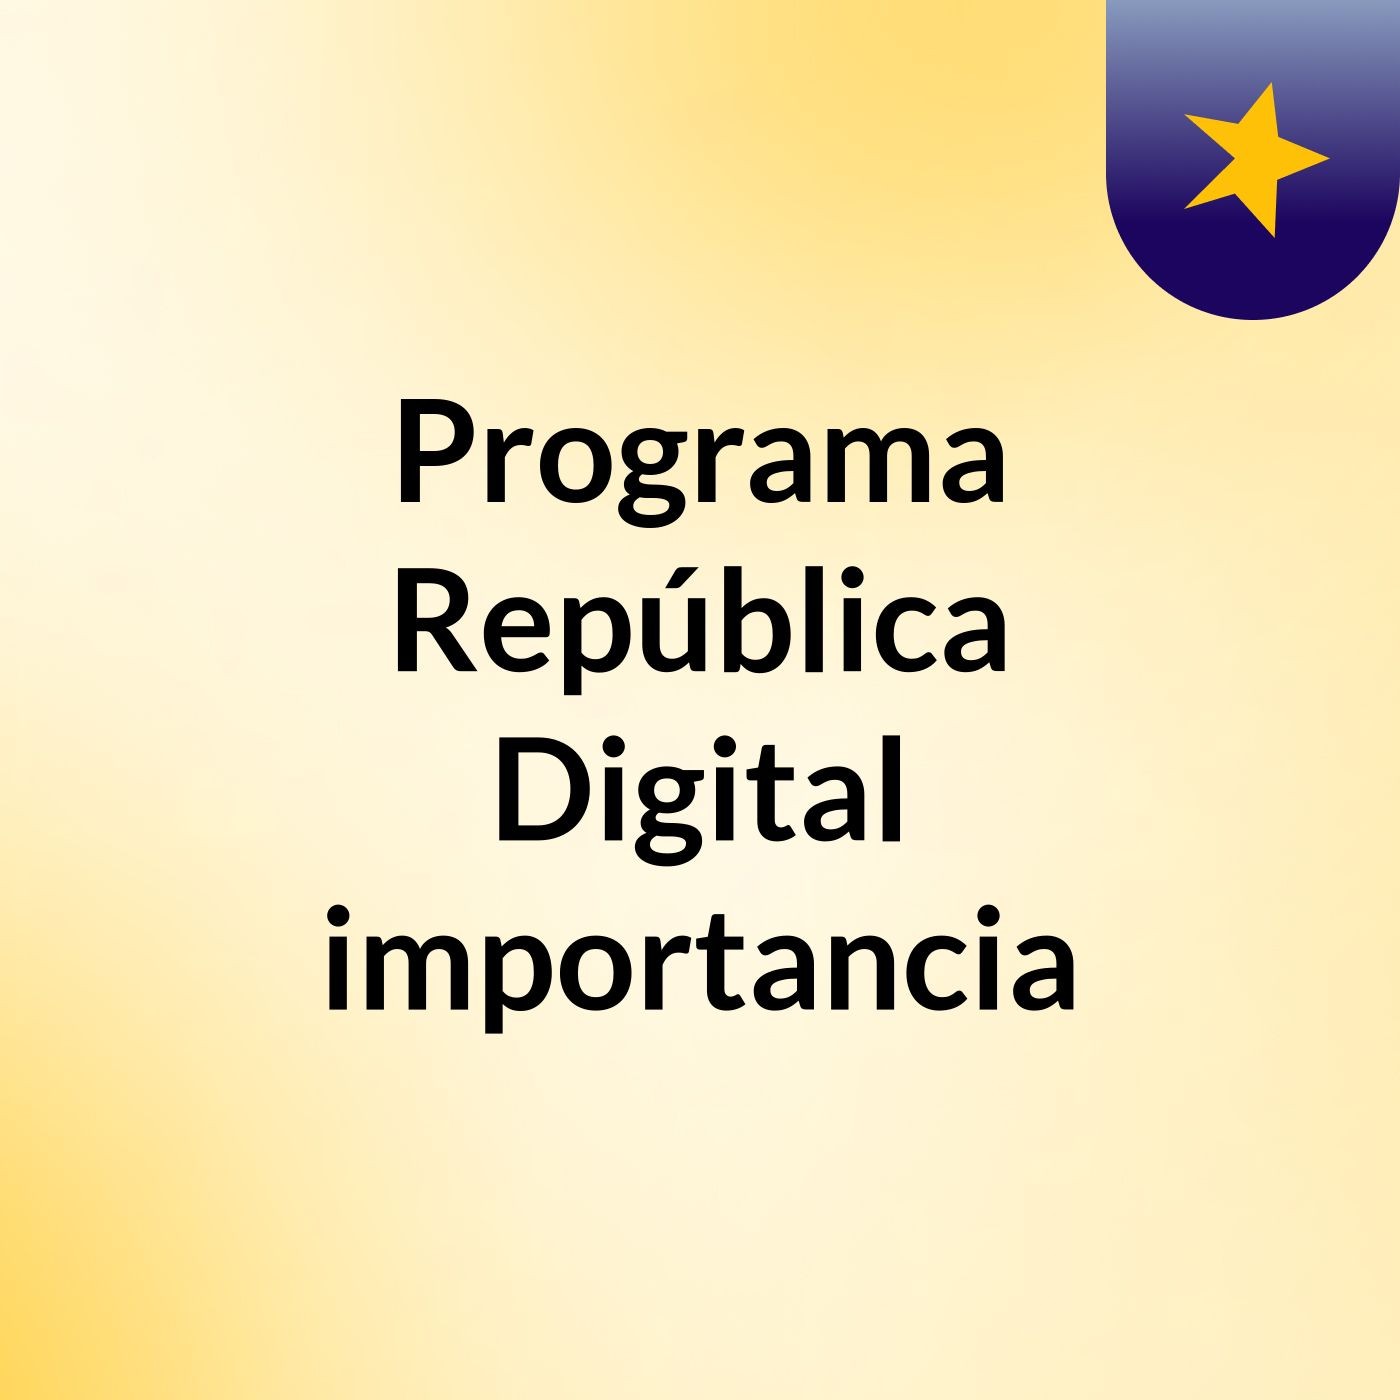 Programa República Digital importancia